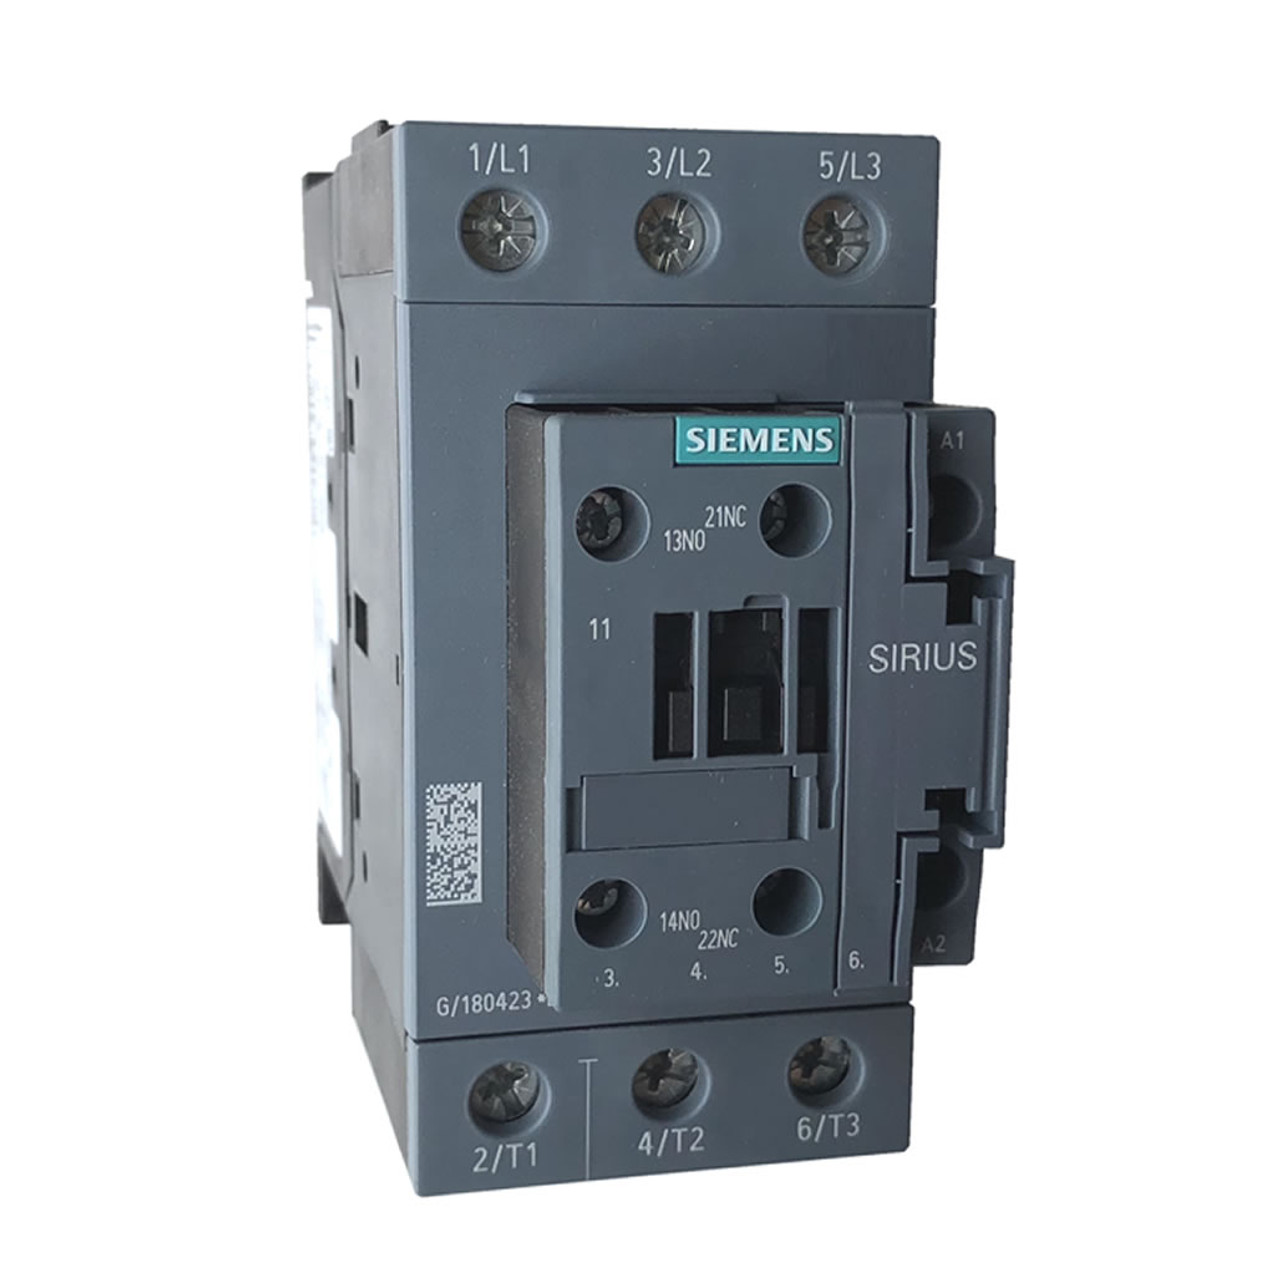 Siemens 3RT2036-1AN20 contactor